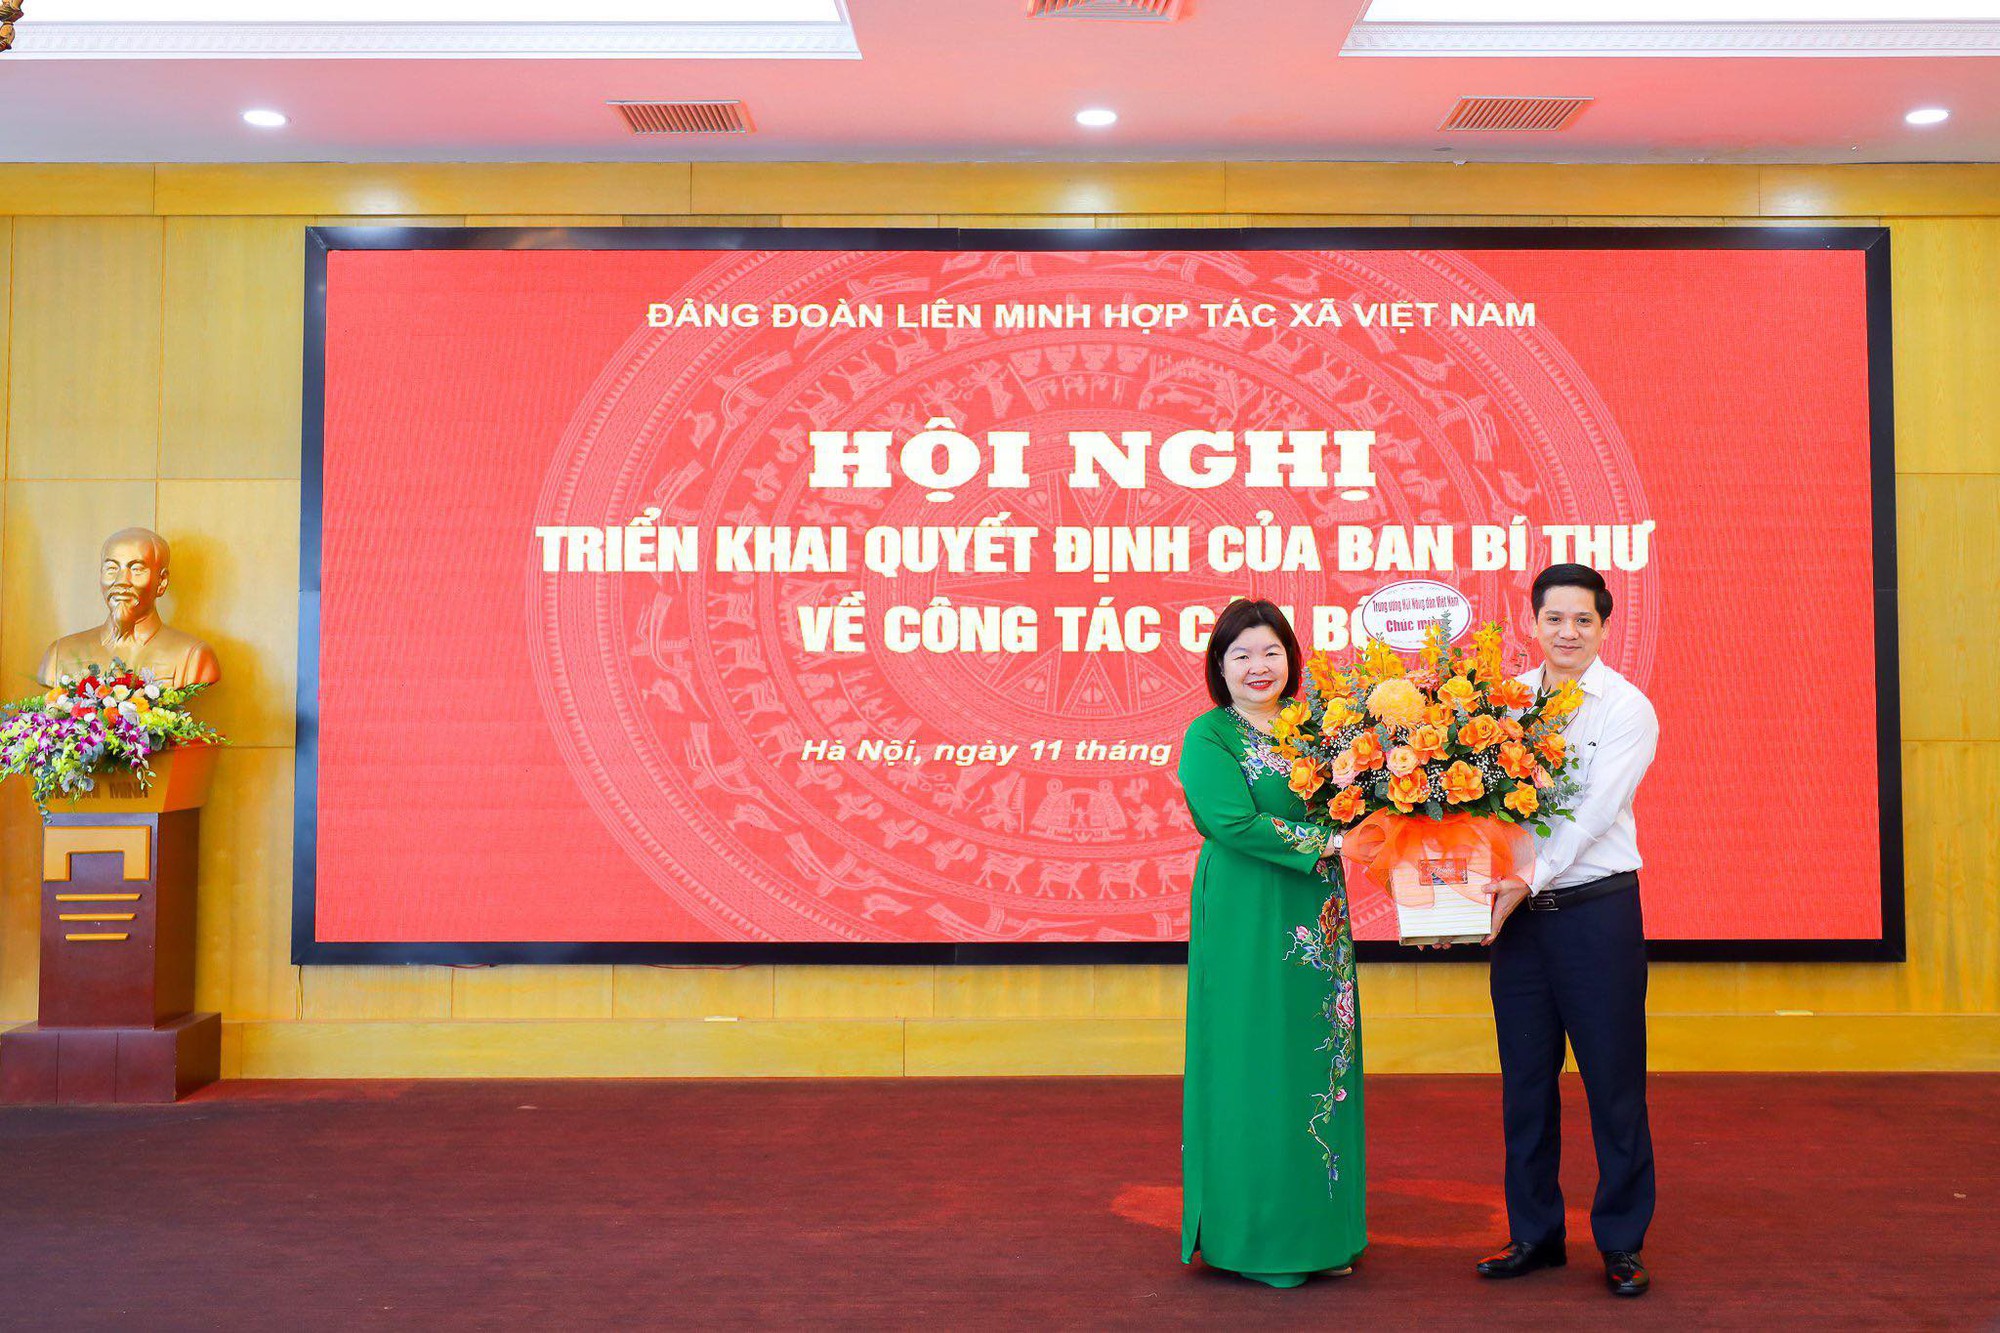 Bà Cao Xuân Thu Vân được Ban Bí thư chỉ định giữ chức Bí thư Đảng đoàn Liên minh Hợp tác xã Việt Nam - Ảnh 2.